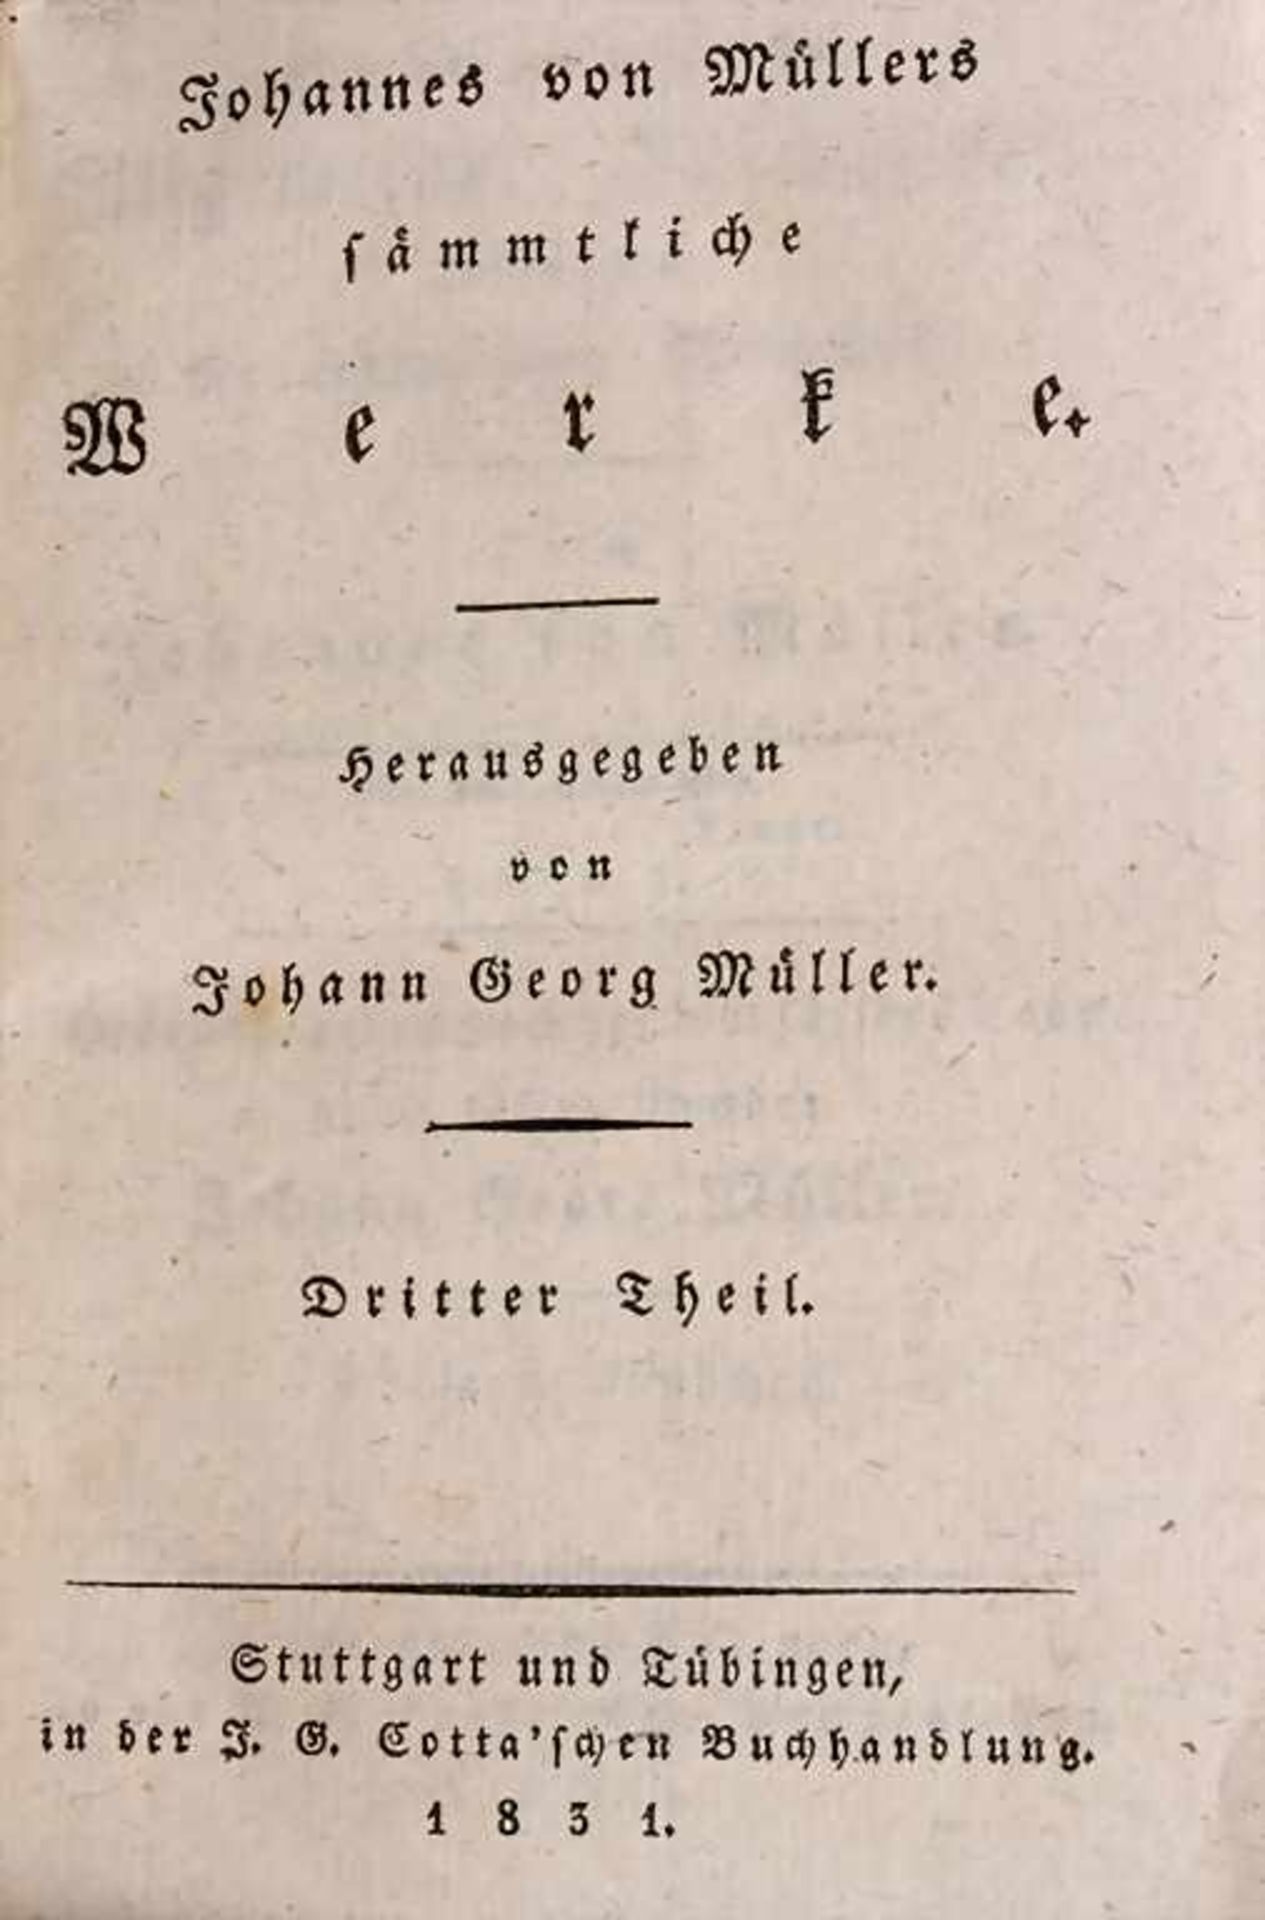 J. G. Müller (Hg), 10 Bände 'Johannes Müller', 1831/1832<br